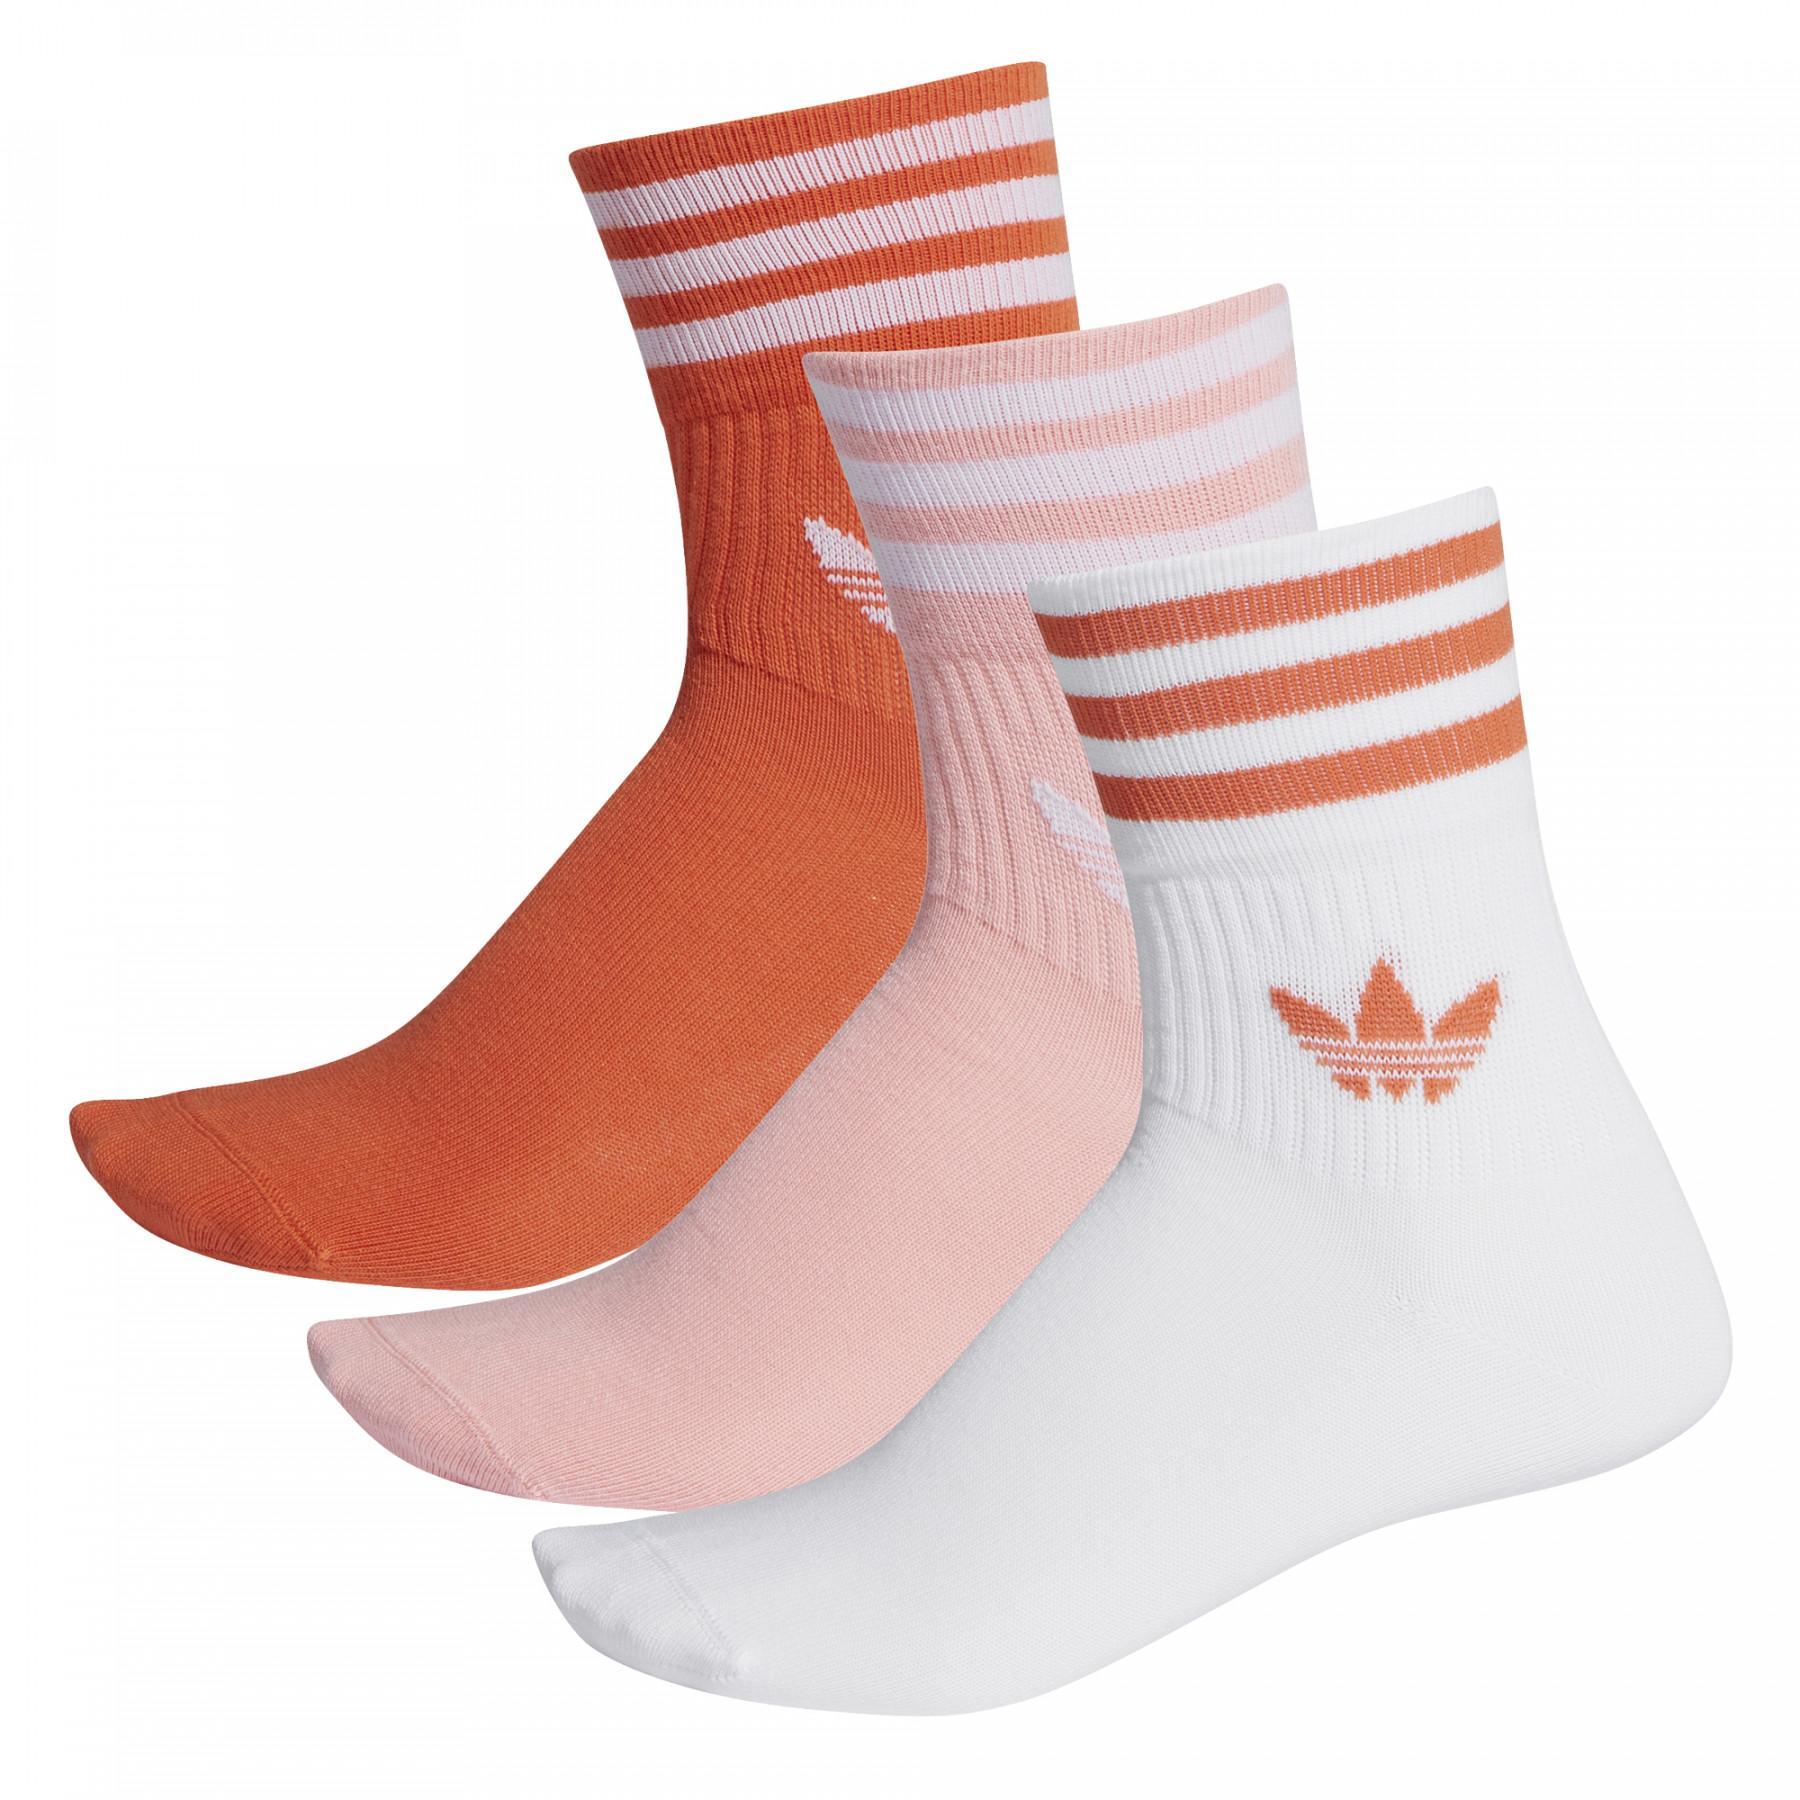 Middenkuit sokken adidas originals (3 paires)